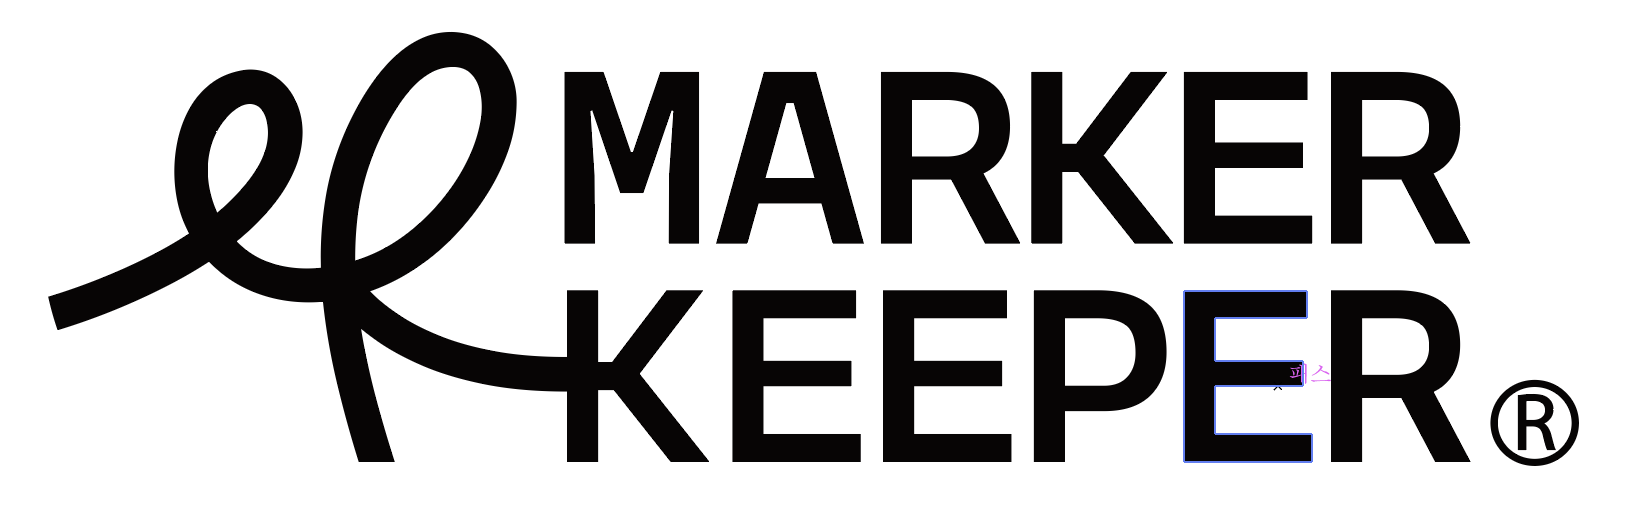 마커키퍼 MARKER KEEPER